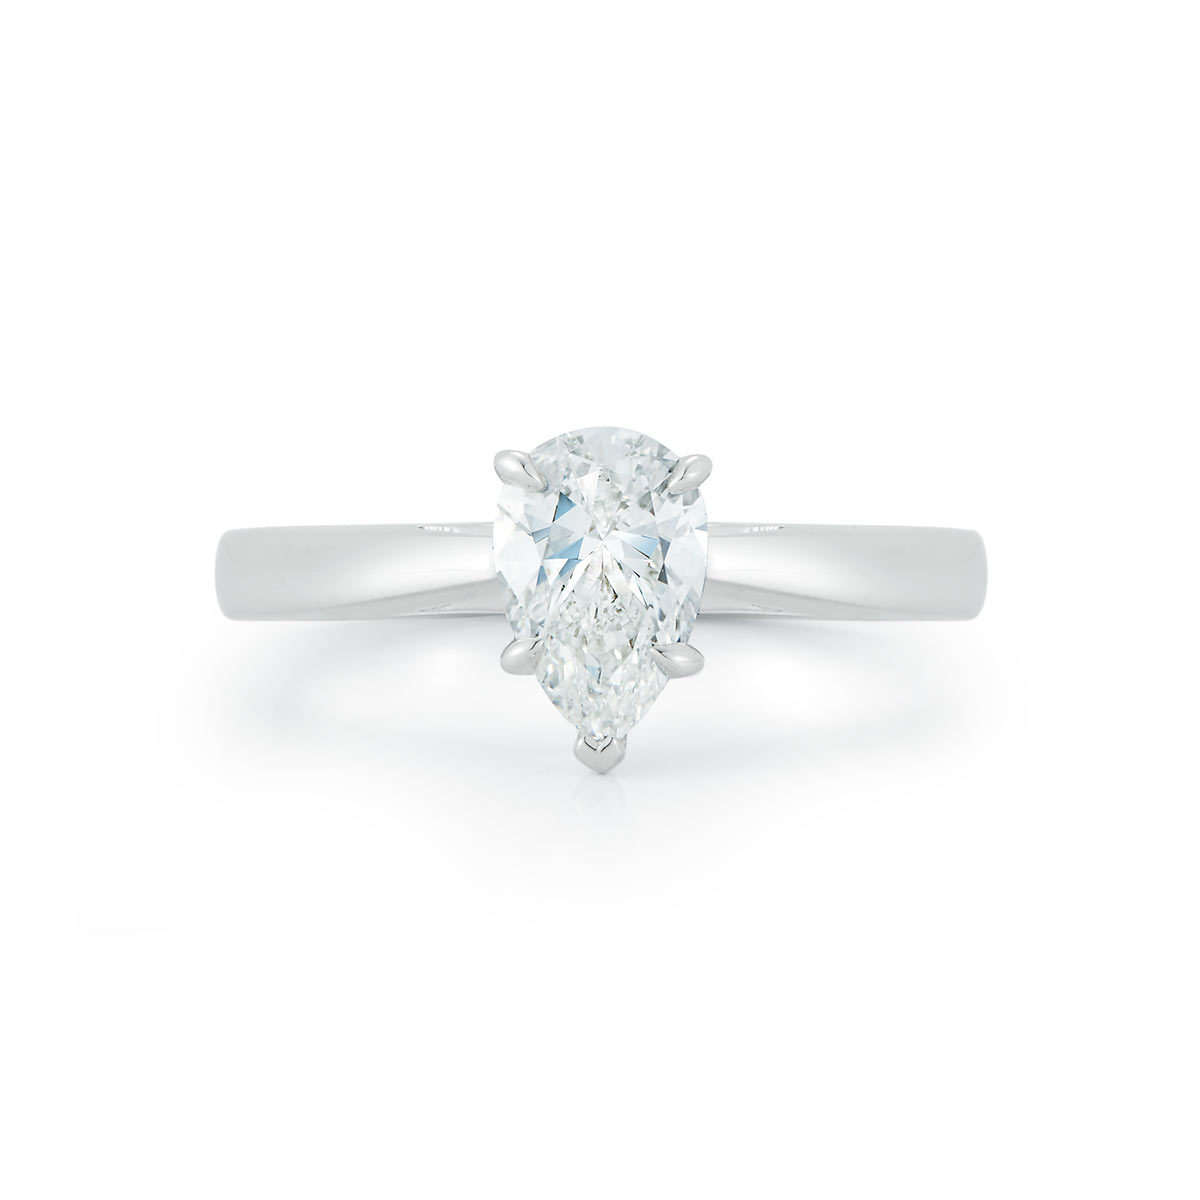 1.0ct Pear Cut Diamond Solitaire Ring, Platinum